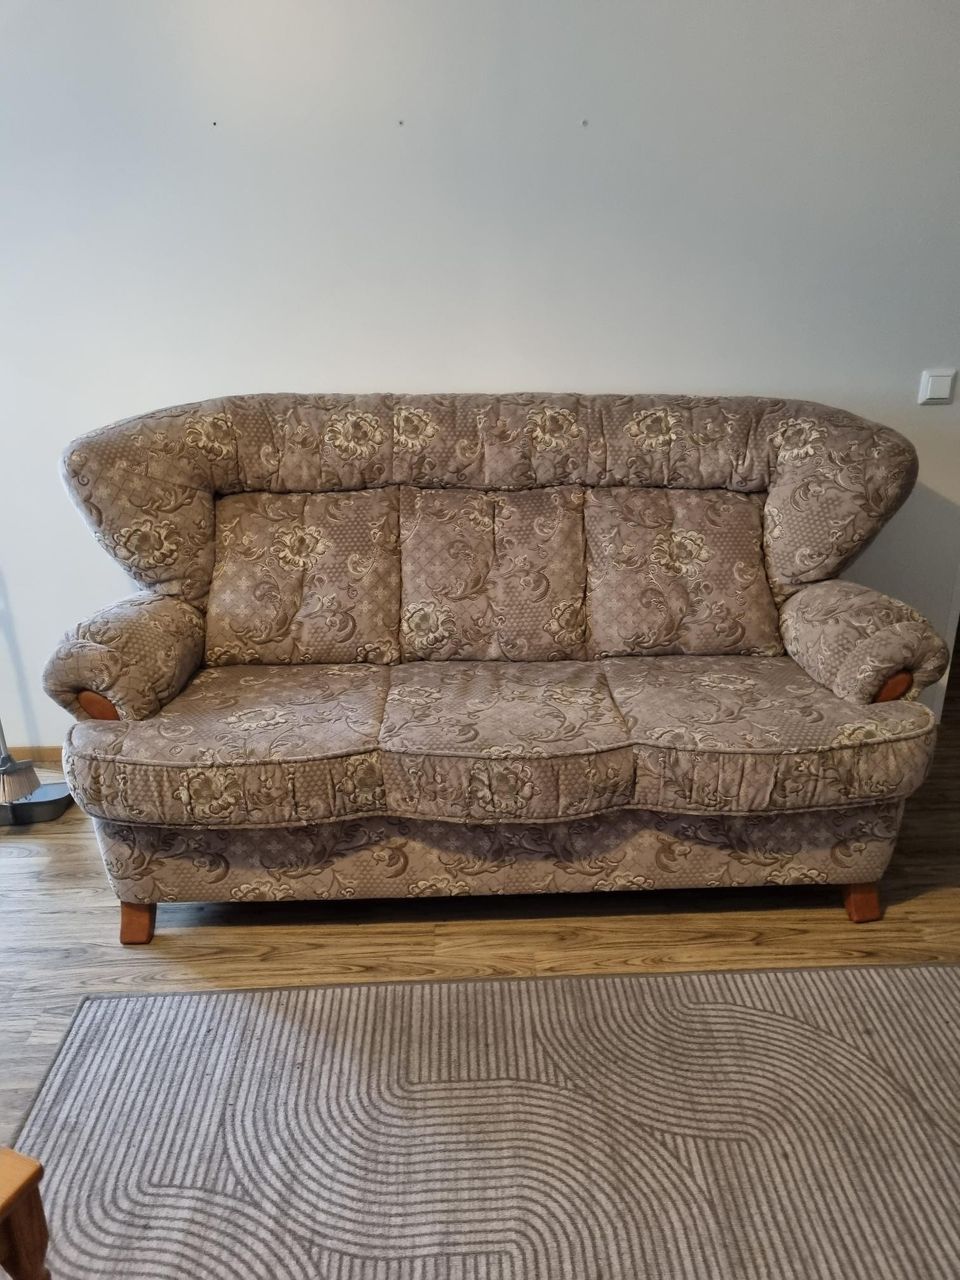 3 hengen sohva